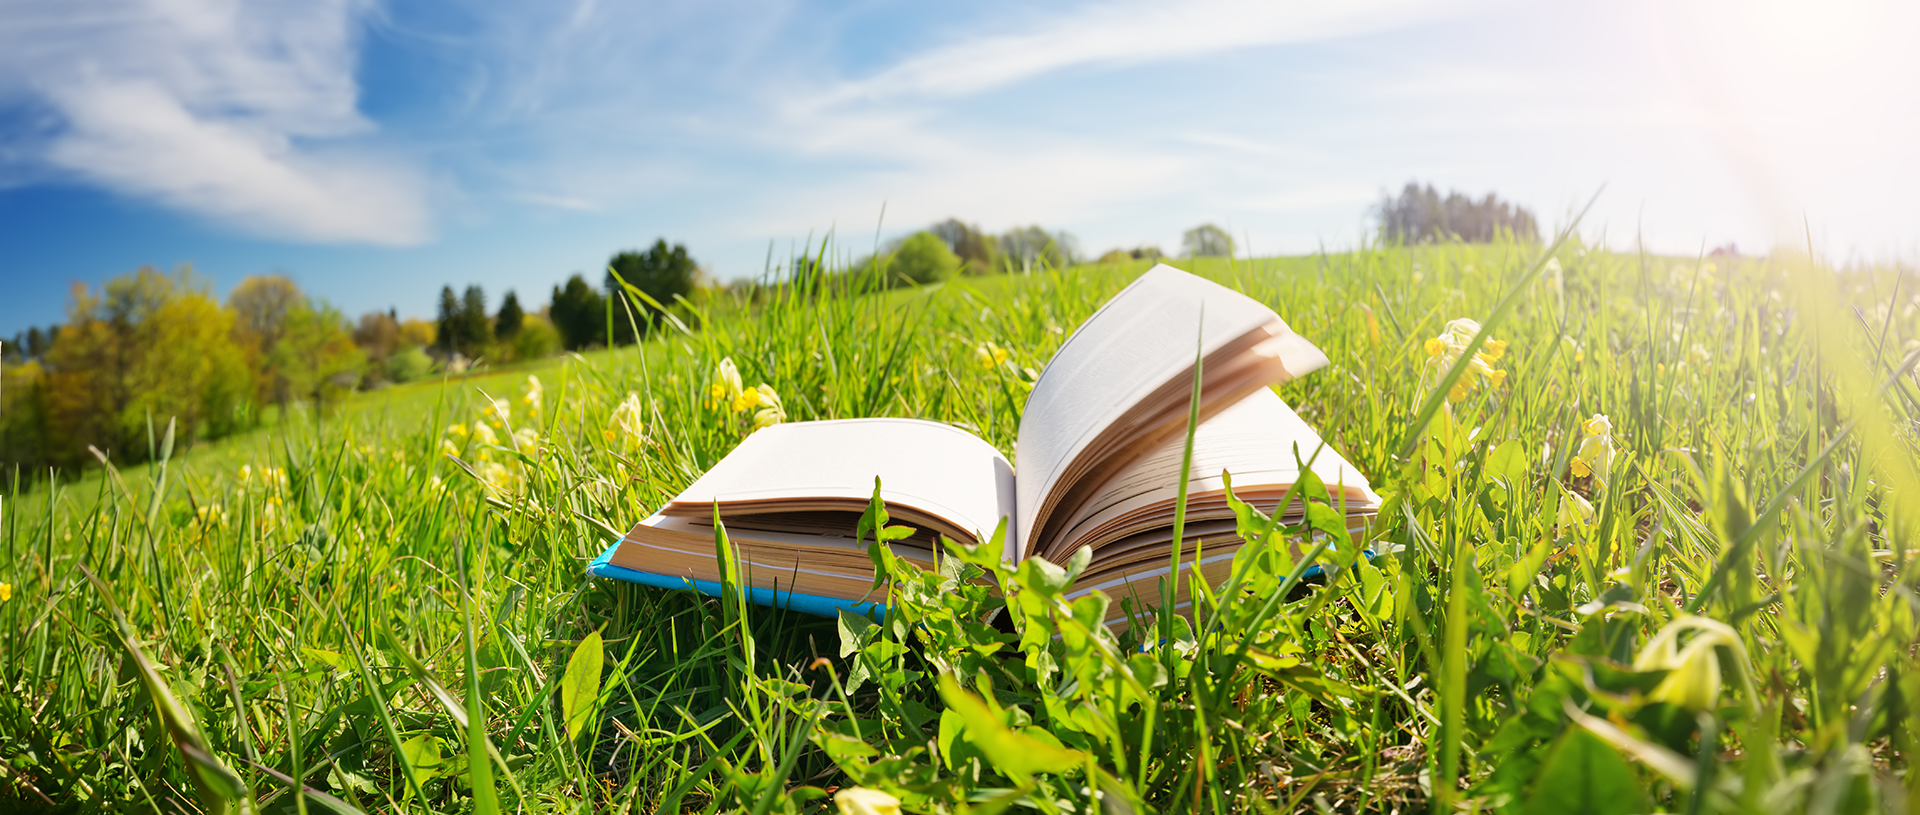 open book in a green field 